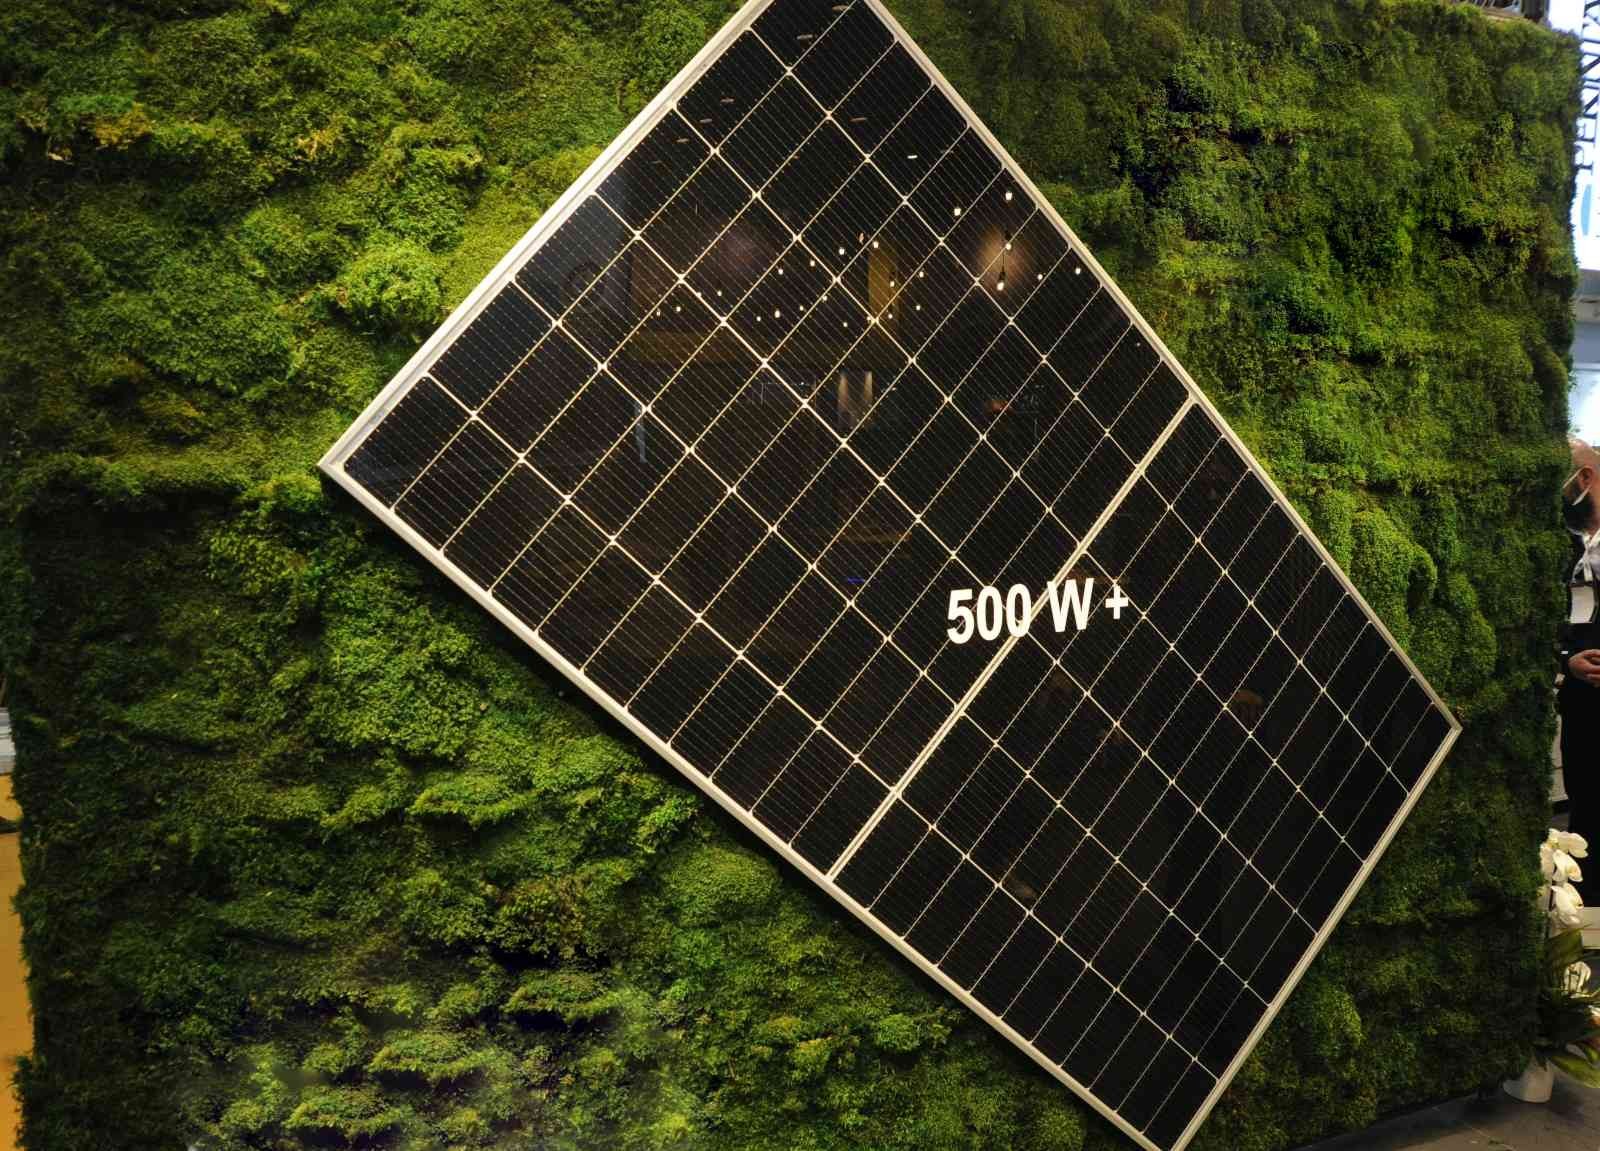 Elektrik fiyatlarındaki artış, elektrik üretiminde kullanılan güneş panellerine ilgiyi artırdı. Sektör temsilcisi Utku Korkmaz, geçen seneye göre ...